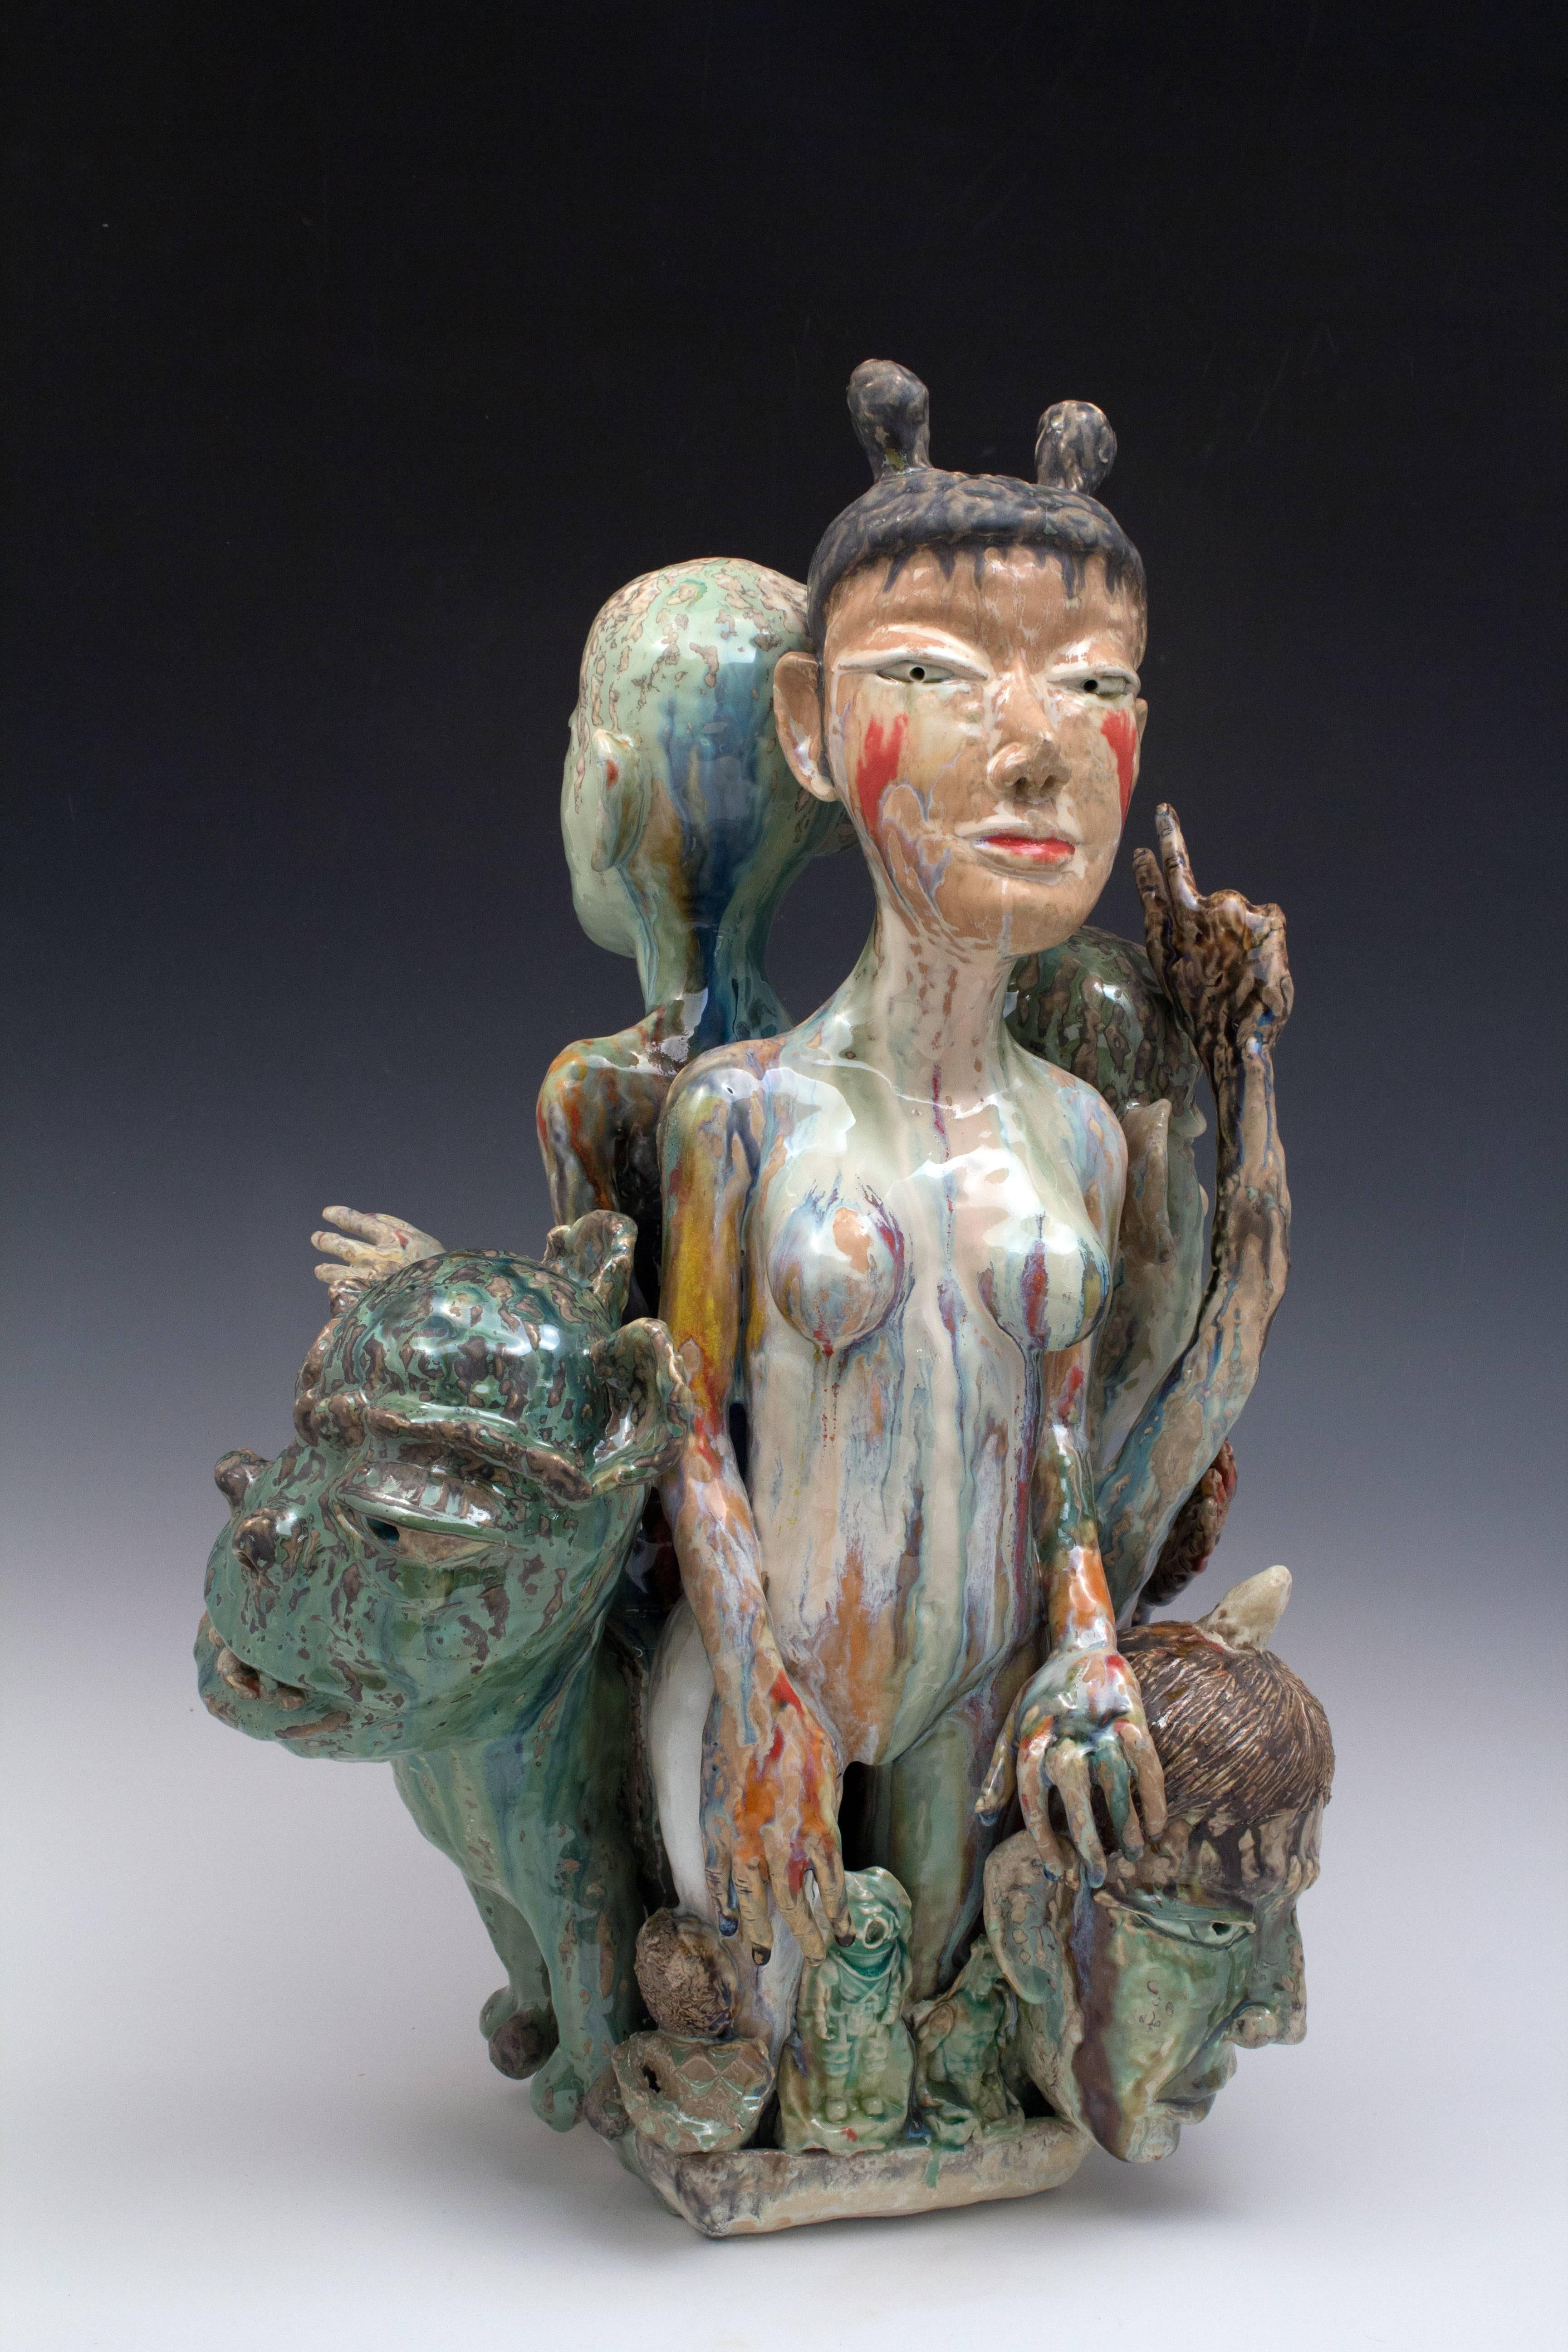 Die keramischen Skulpturen von SunKoo Yuh bestehen aus engen Gruppierungen verschiedener Formen, darunter Pflanzen, Tiere, Fische und menschliche Figuren. Während die koreanische Kunst, der Buddhismus und der konfuzianische Glaube einige Aspekte